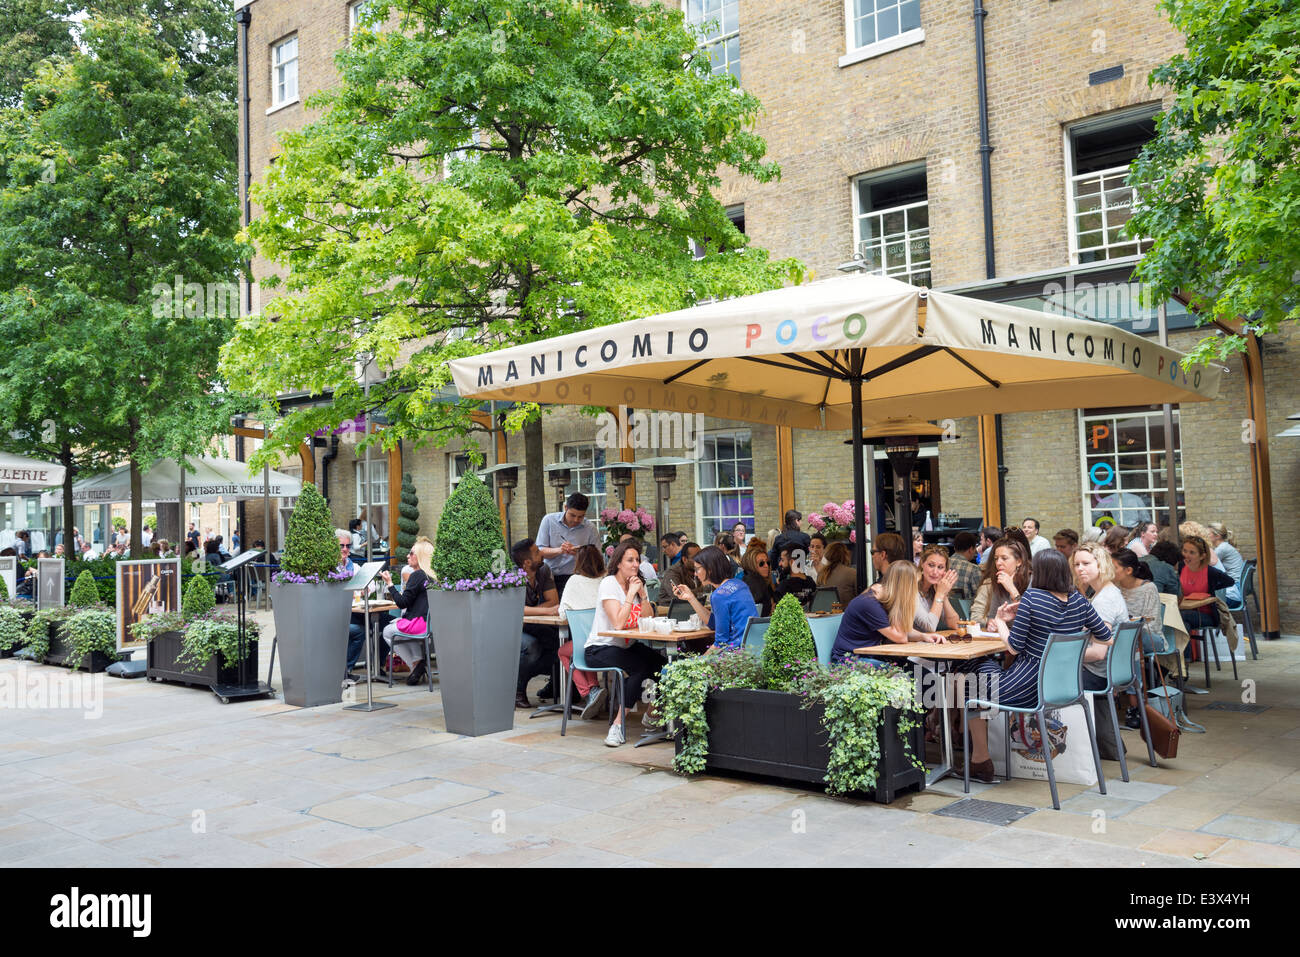 Les personnes mangeant dehors à Manicomio Poco restaurant à Duke of York Square, Chelsea, Londres, Angleterre, Royaume-Uni Banque D'Images